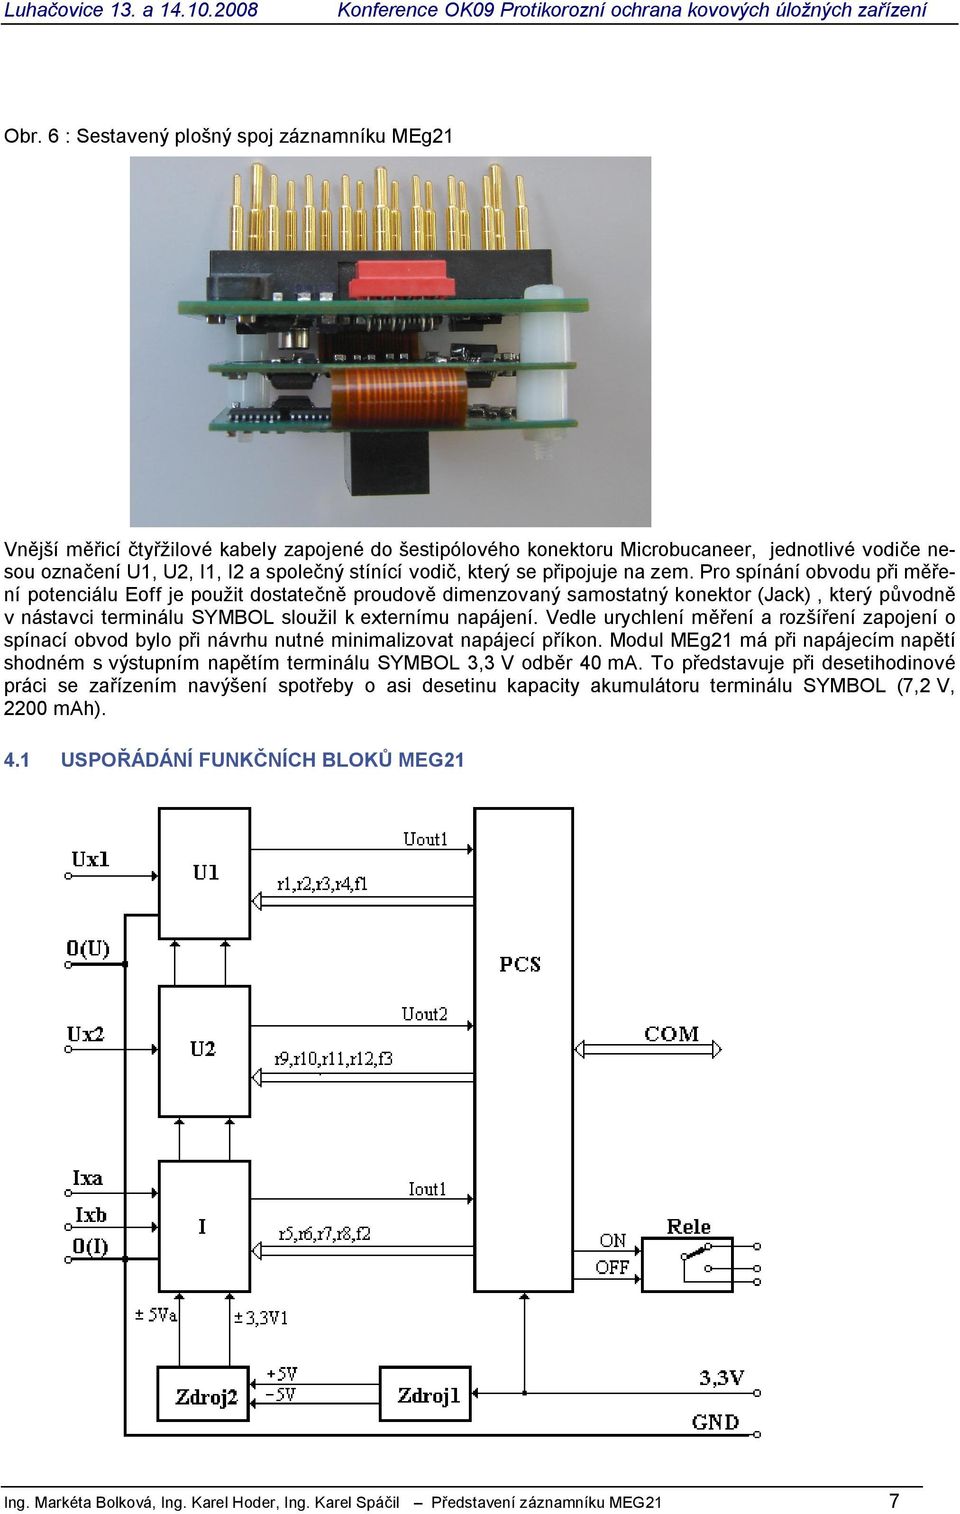 Pro spínání obvodu p i m ení potenciálu Eoff je použit dostate proudov dimenzovaný samostatný konektor (Jack), který p vodn v nástavci terminálu SYMBOL sloužil k externímu napájení.